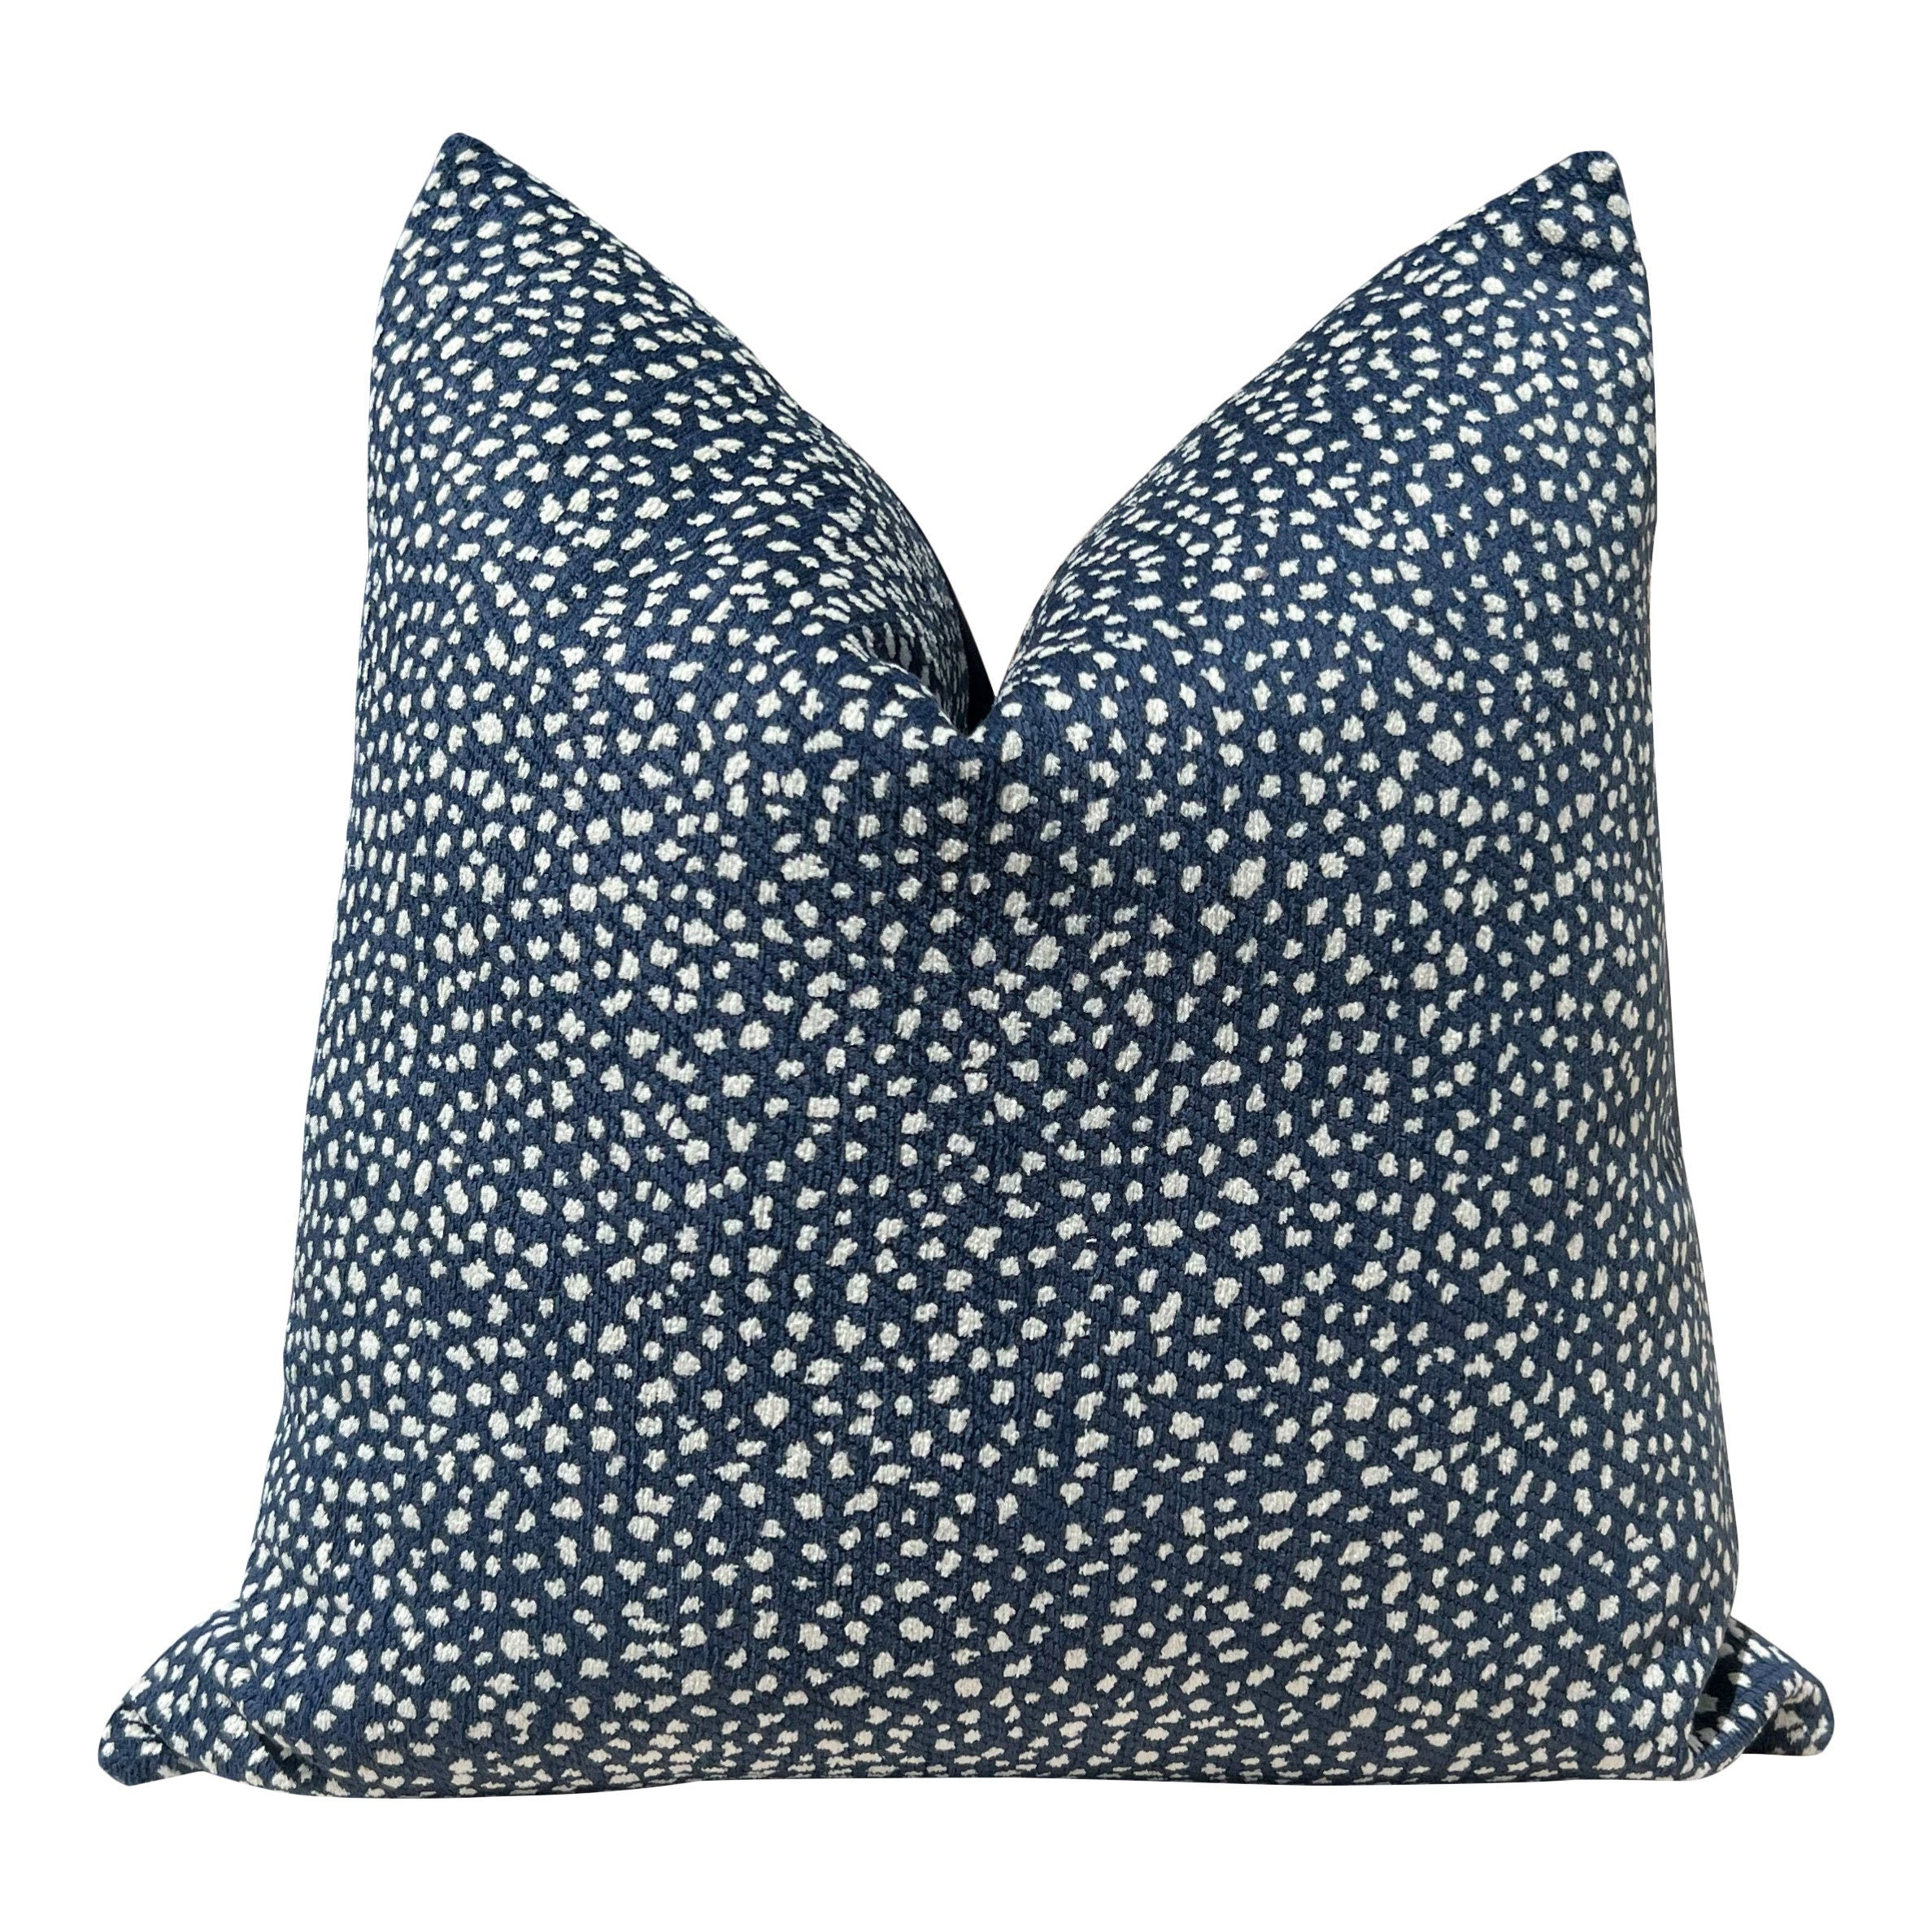 Thibaut Fawn Indoor Outdoor Pillow in Midnight. Outdoor Designer Pillows, High End Pillows, Navy Modern Pillow, Animal Print Lumbar Pillow